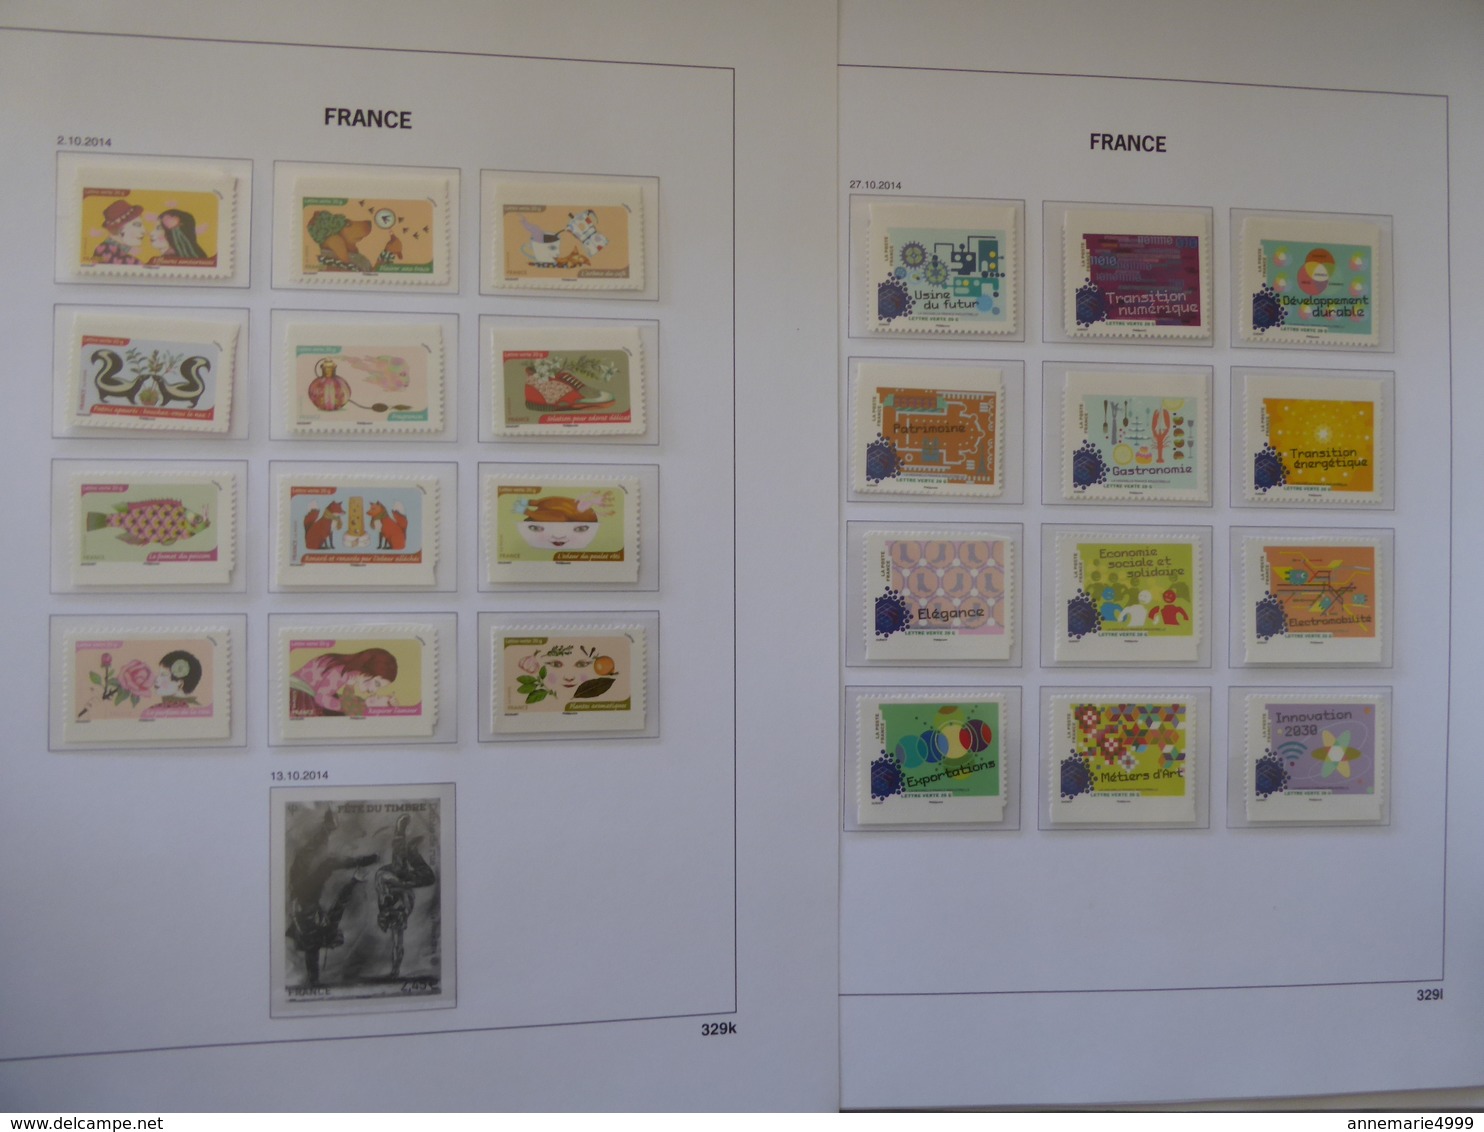 FRANCE 298 timbres TVP en séries complètes entre 2012 et 2014 Revoir le commentaire Faciale 392 € moins 50 %